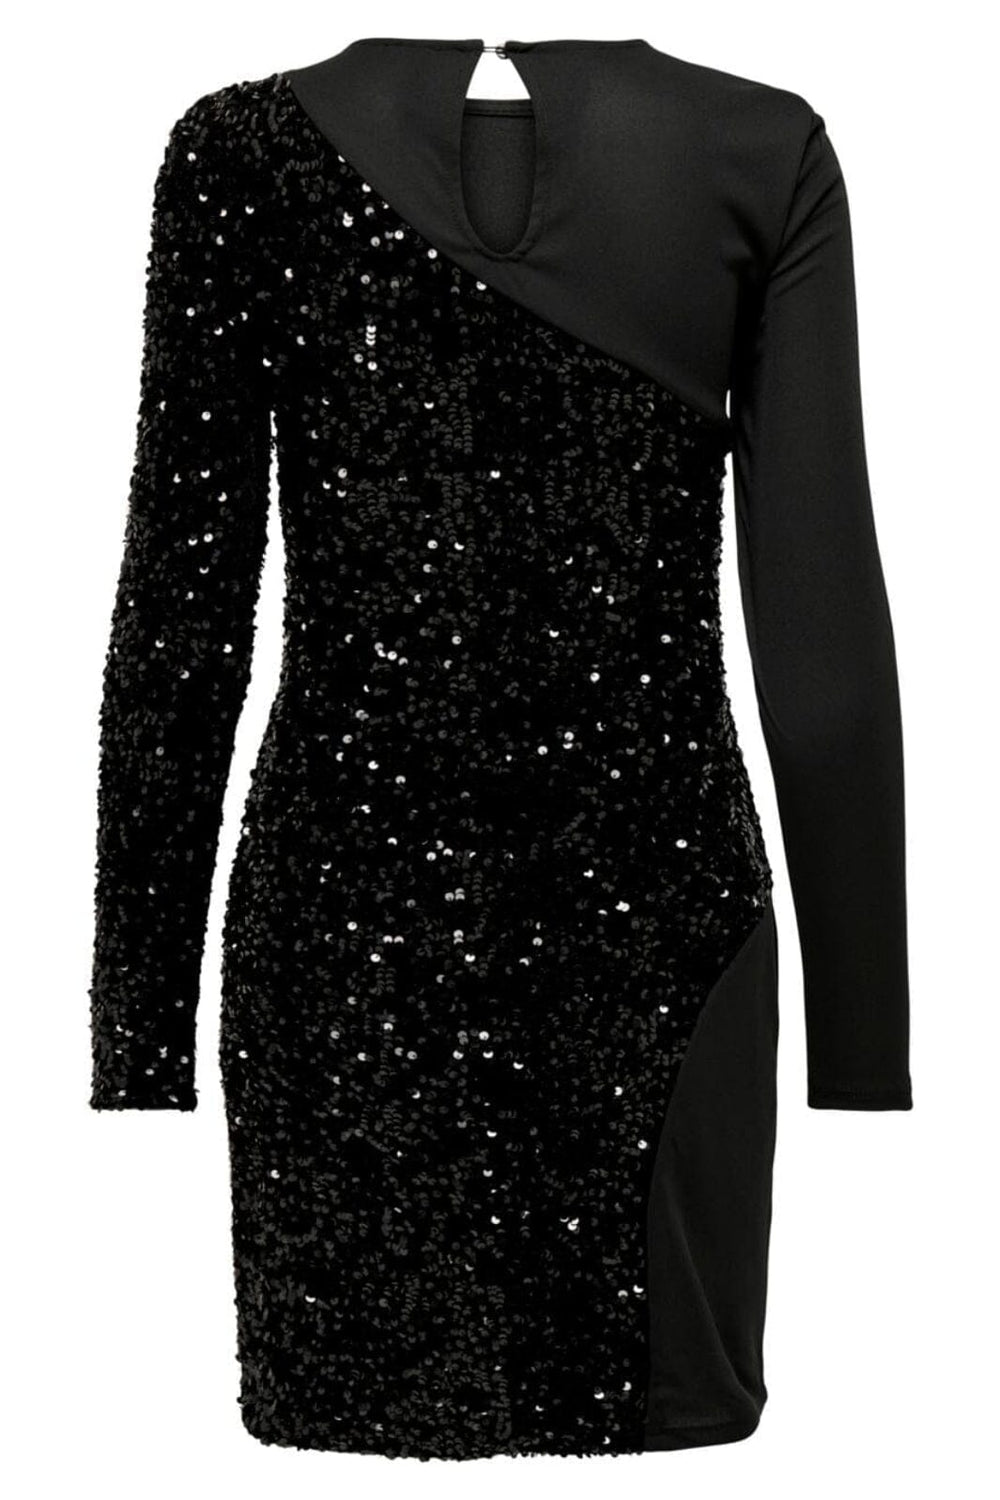 Only - Onlconfidence L/S Sequins Mix Dress - 4394368 Black Black sequins Kjoler 